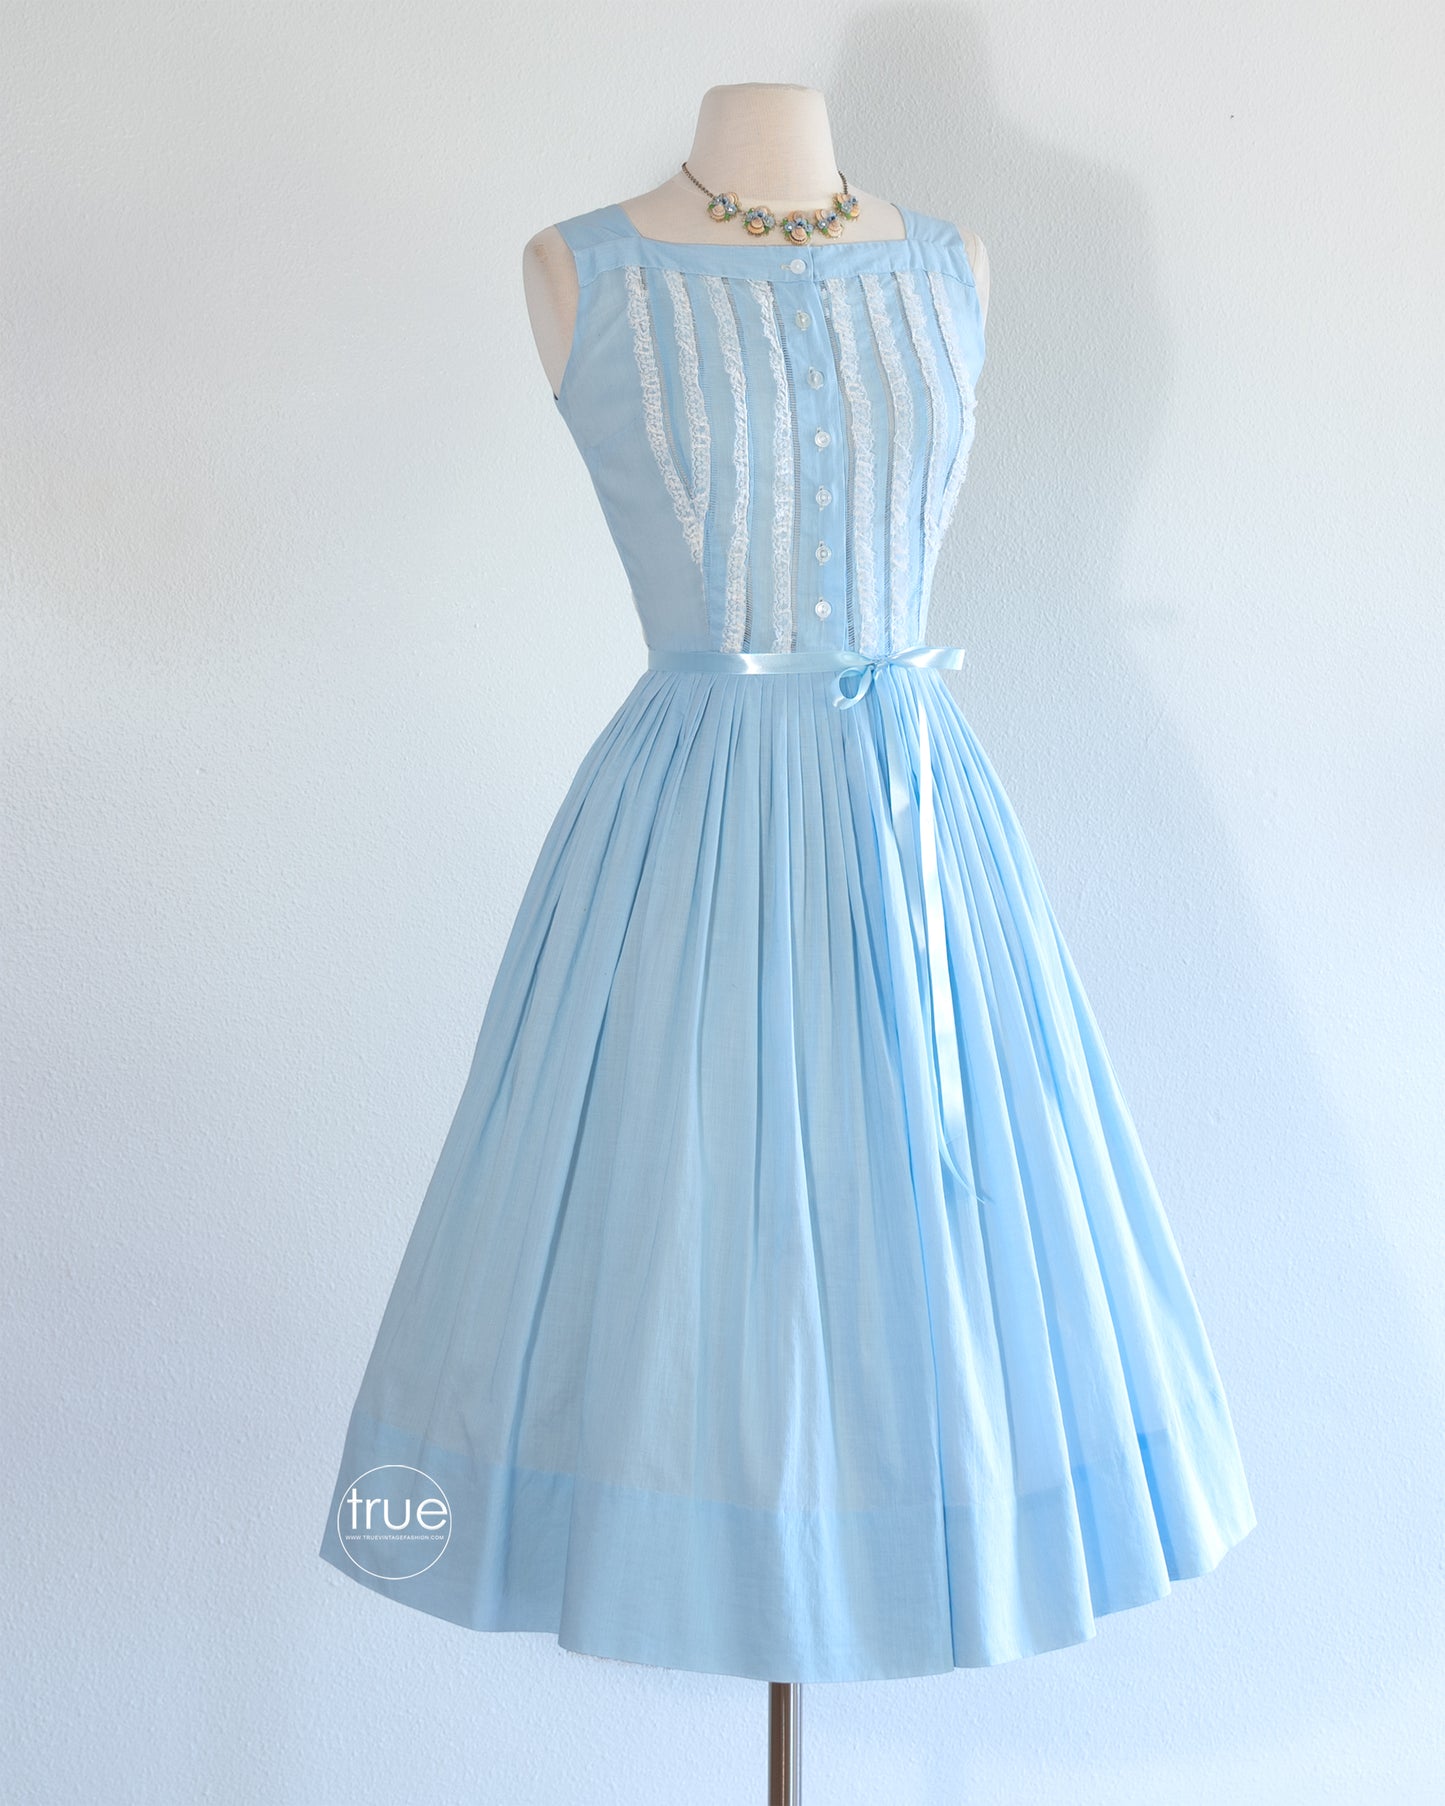 vintage 1950's dress ...easy breezy sky blue with ruffles full skirt dress